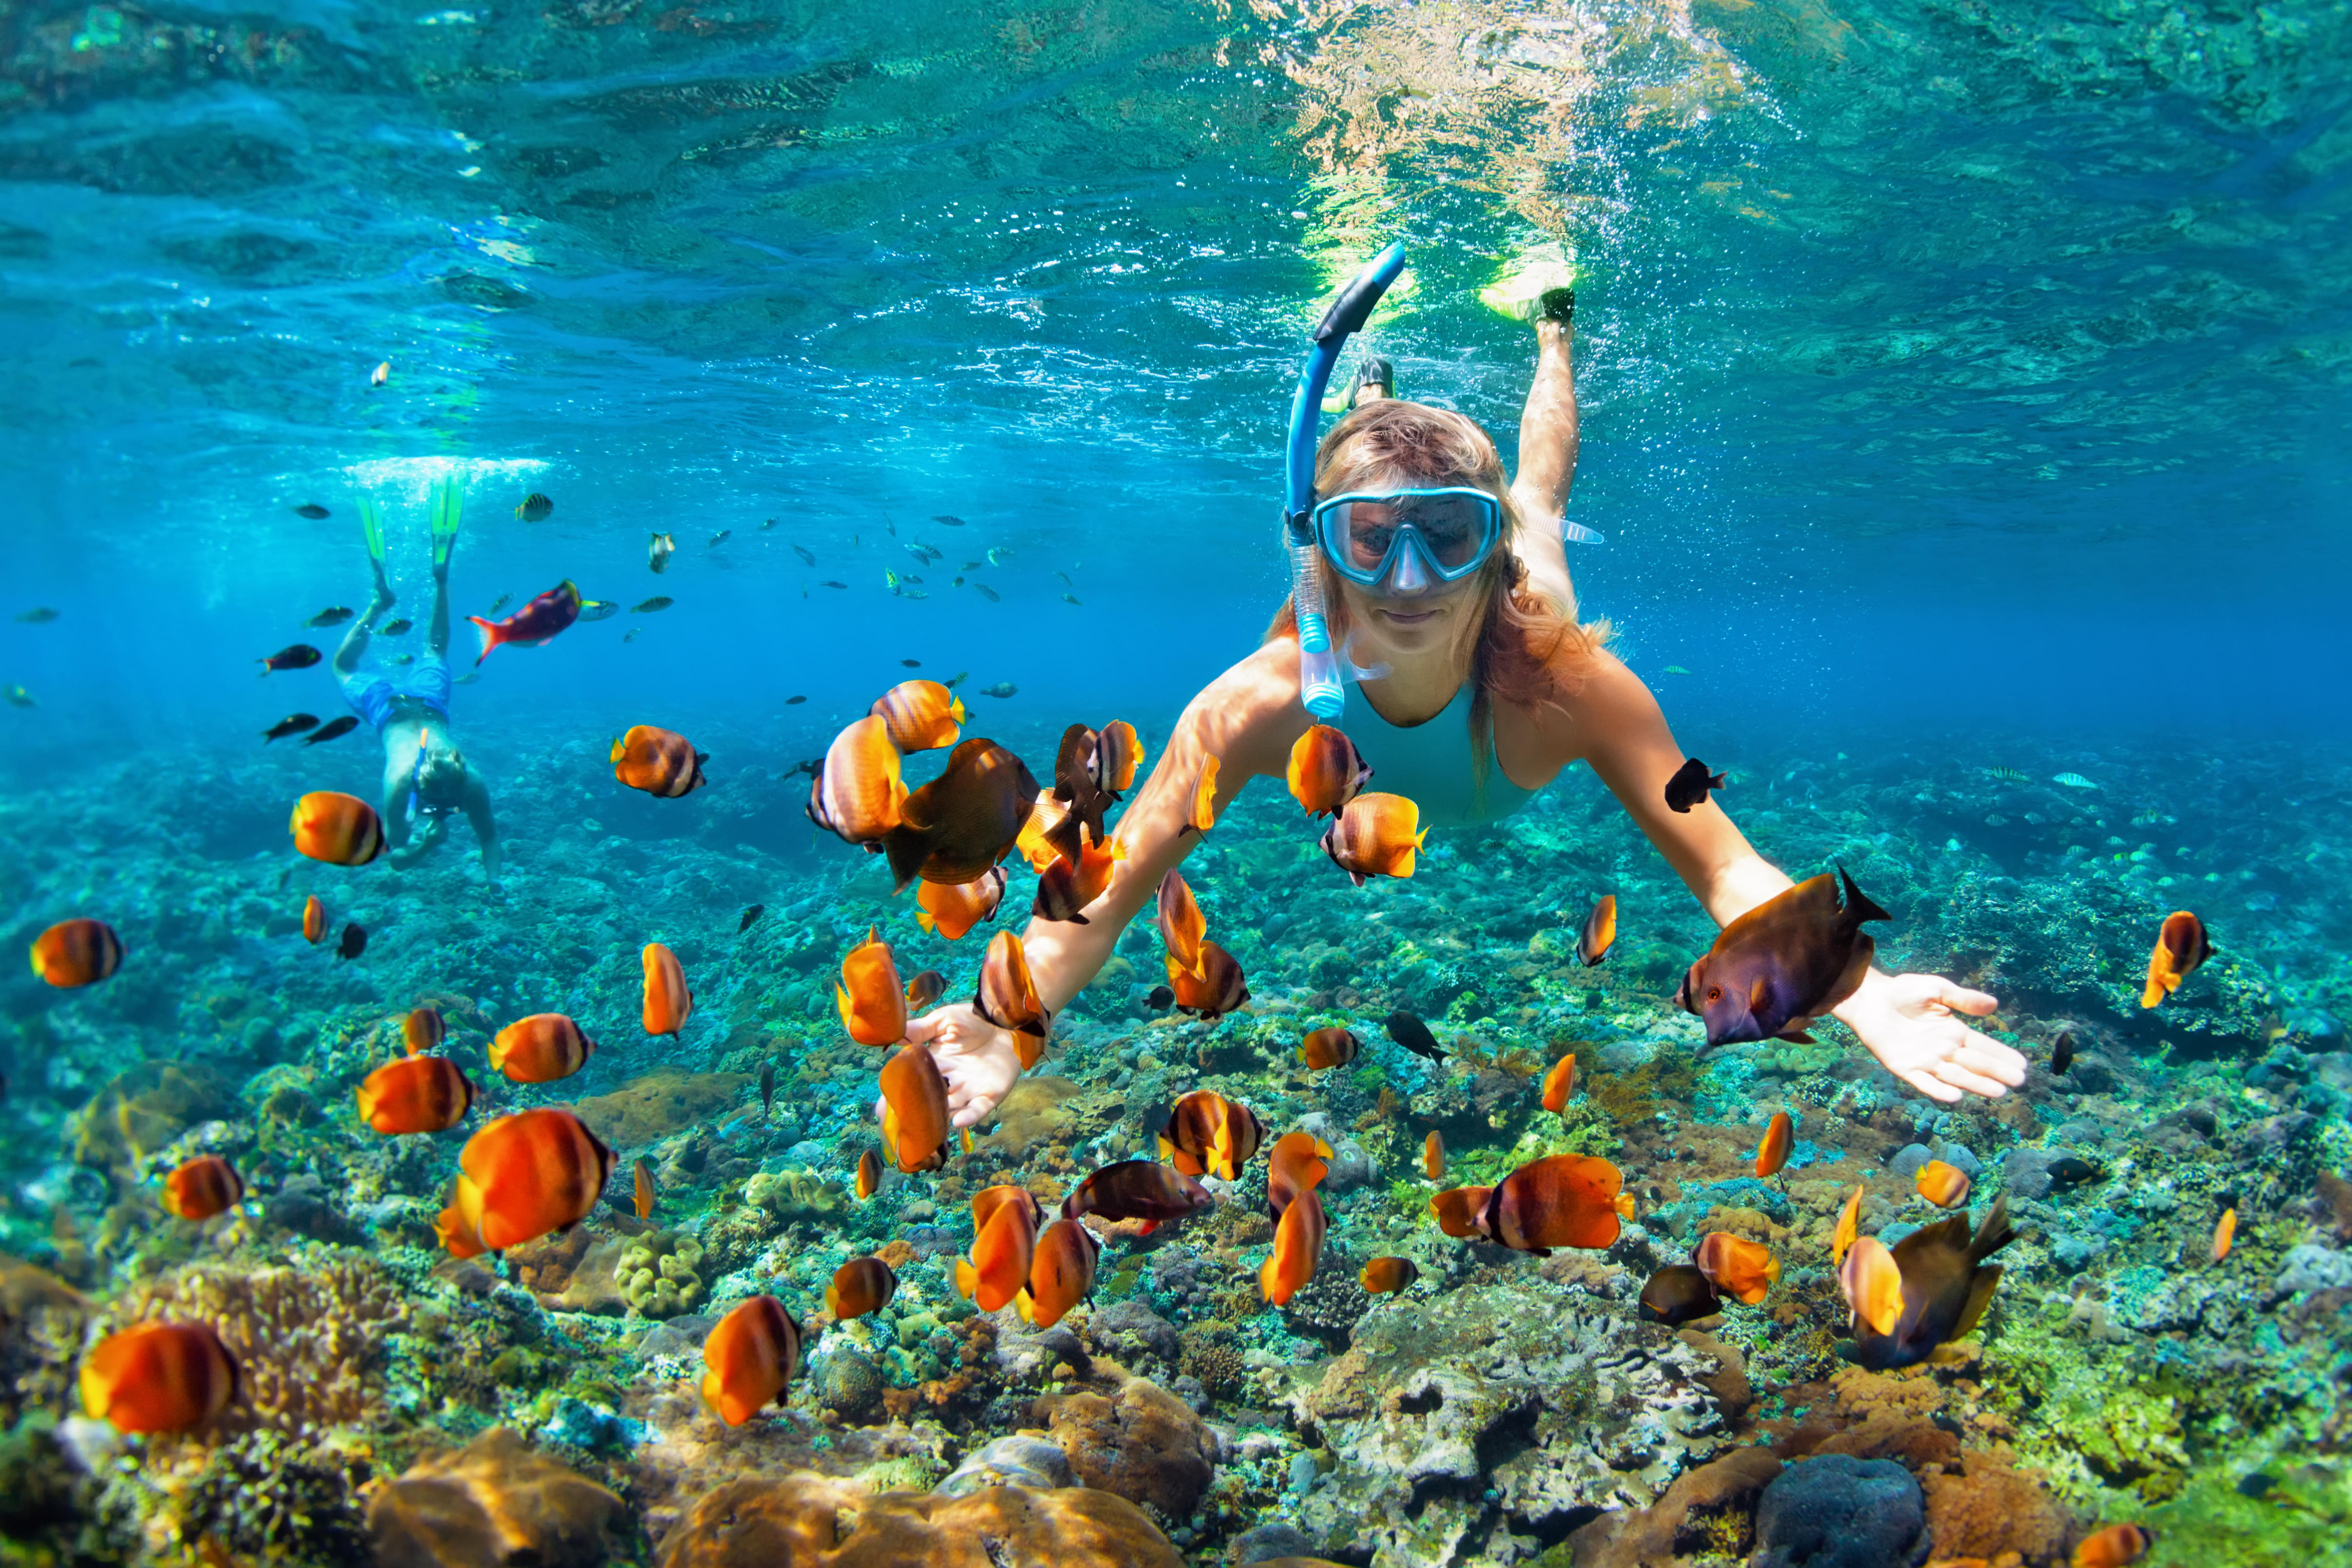 Koh Samui Snorkeling Tour | Book Online & Get 22% Off